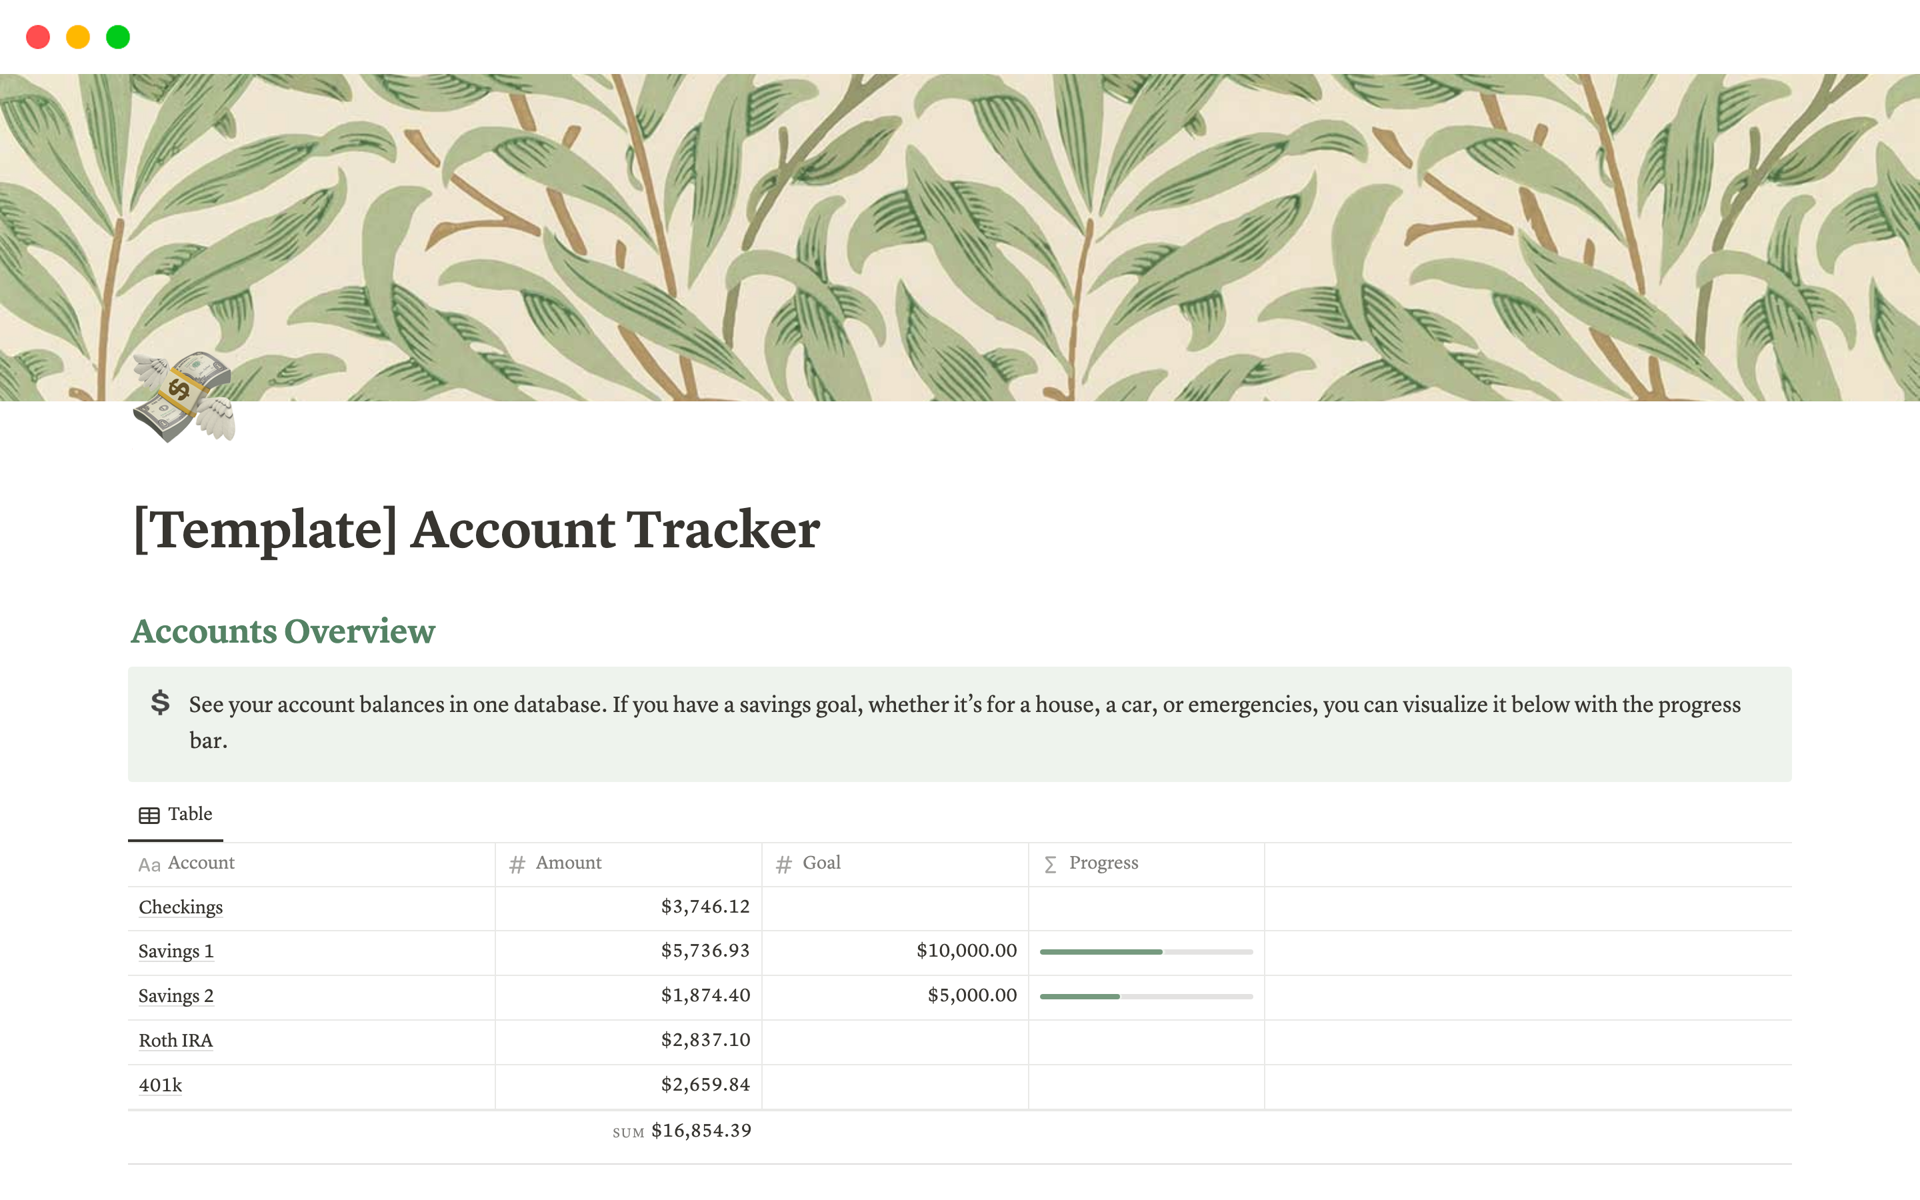 Uma prévia do modelo para Account Tracker